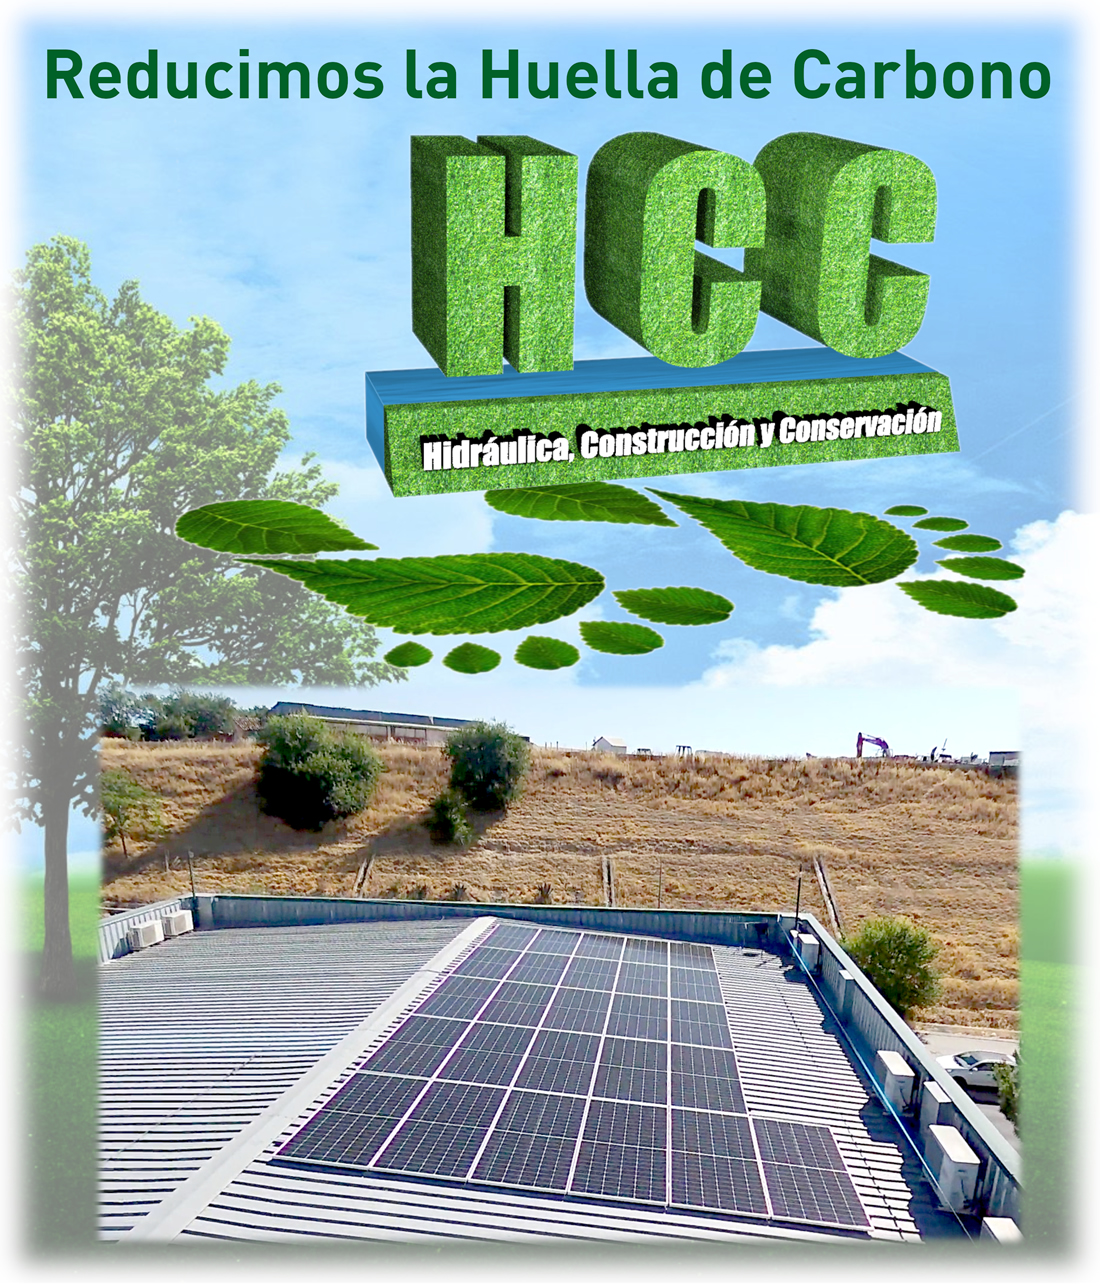 HCC apuesta por la energía fotovoltaica instalando placas solares en su cubierta